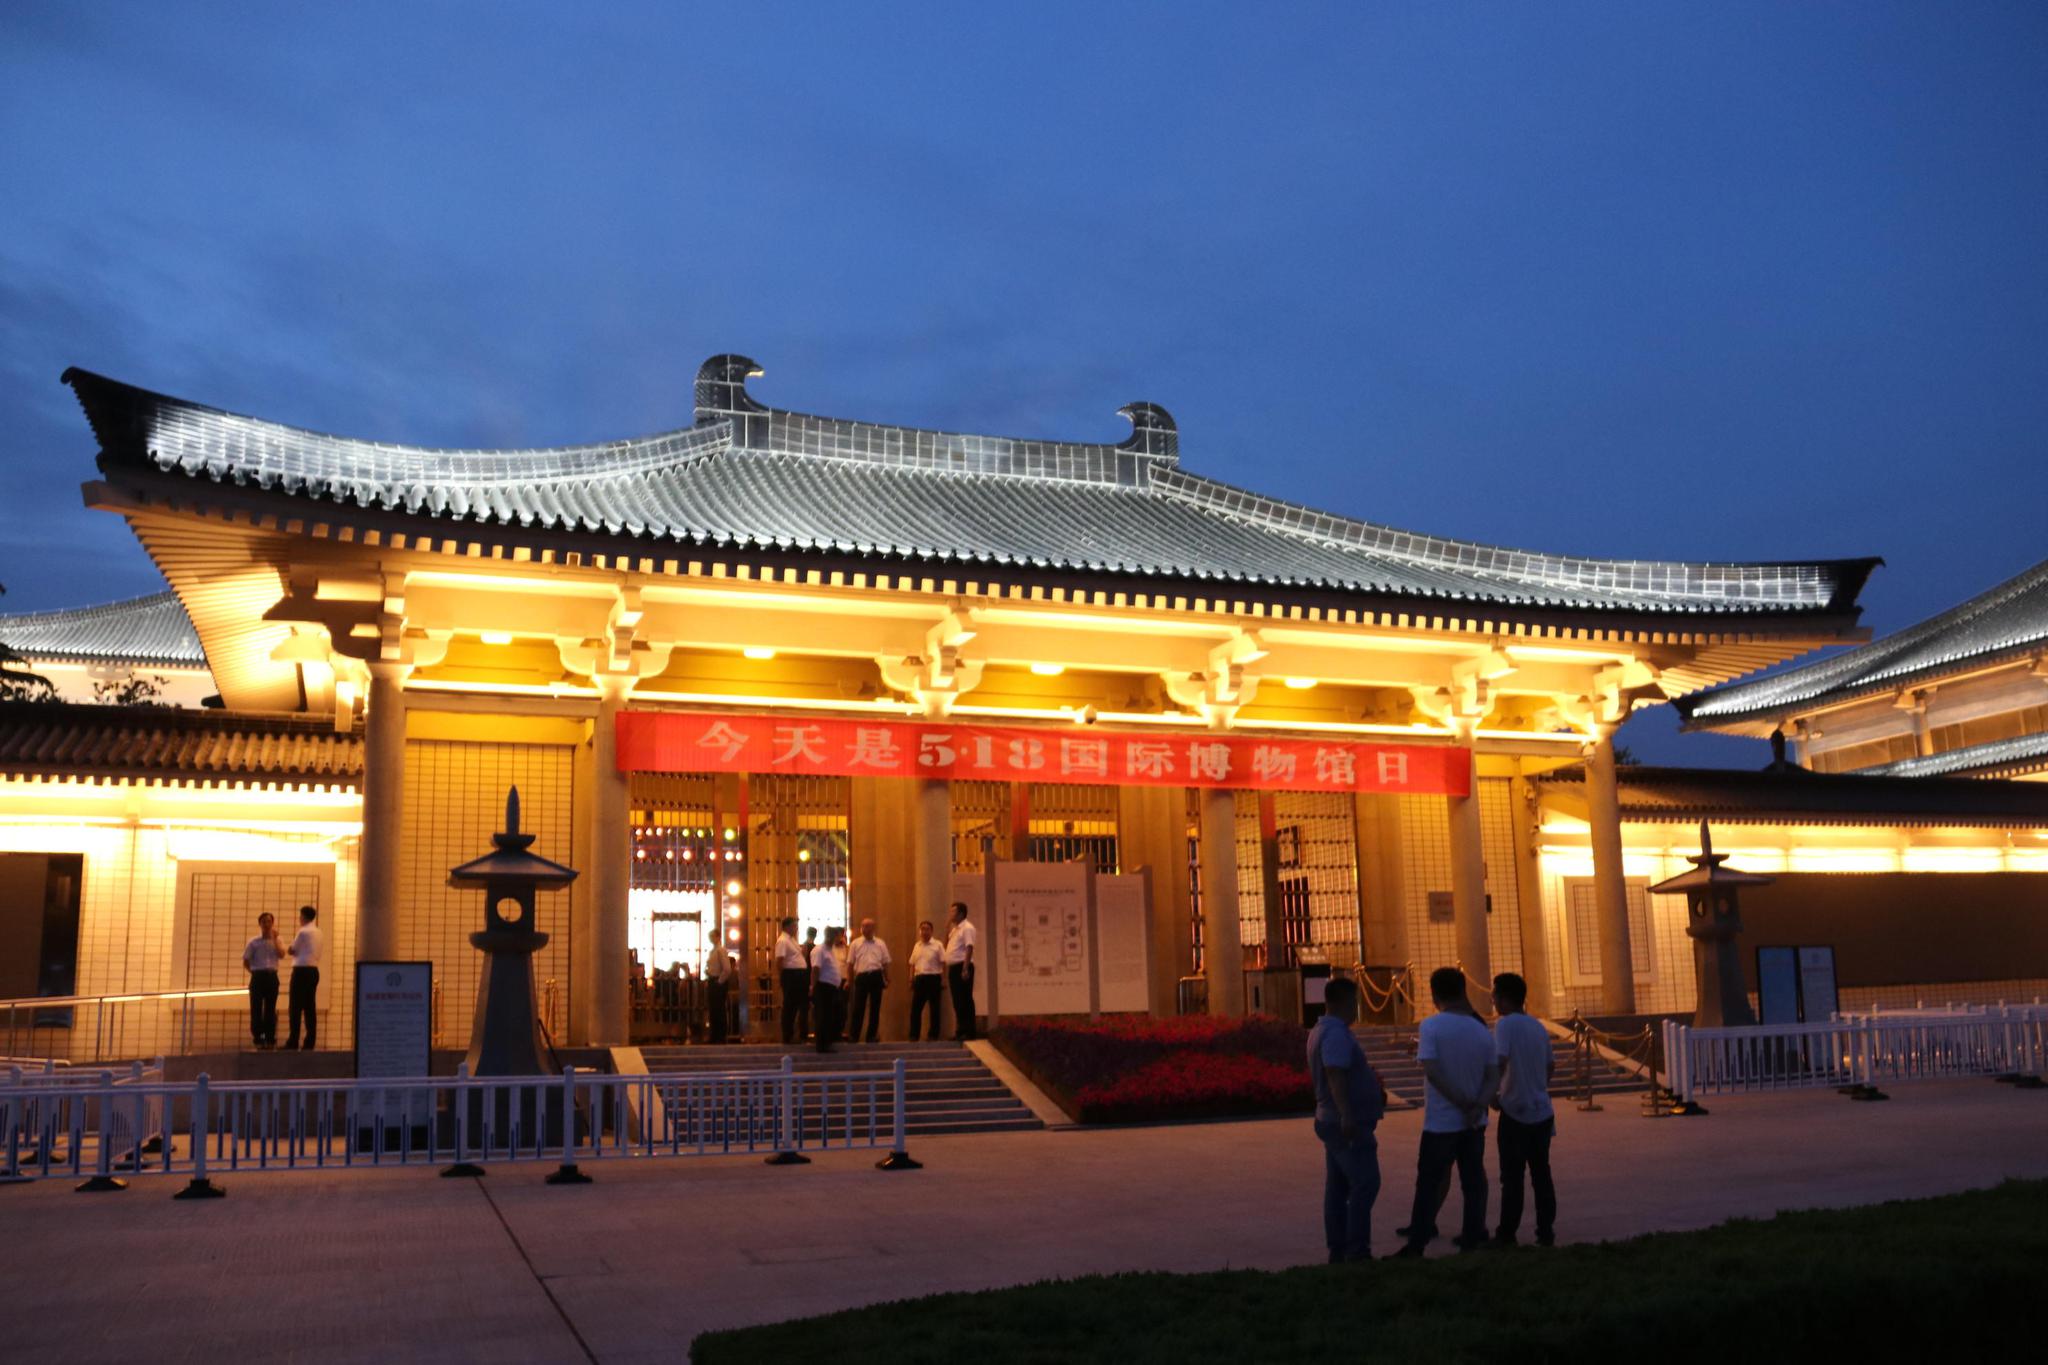 雷行记:陕西历史博物馆装修完毕,全新的面貌展